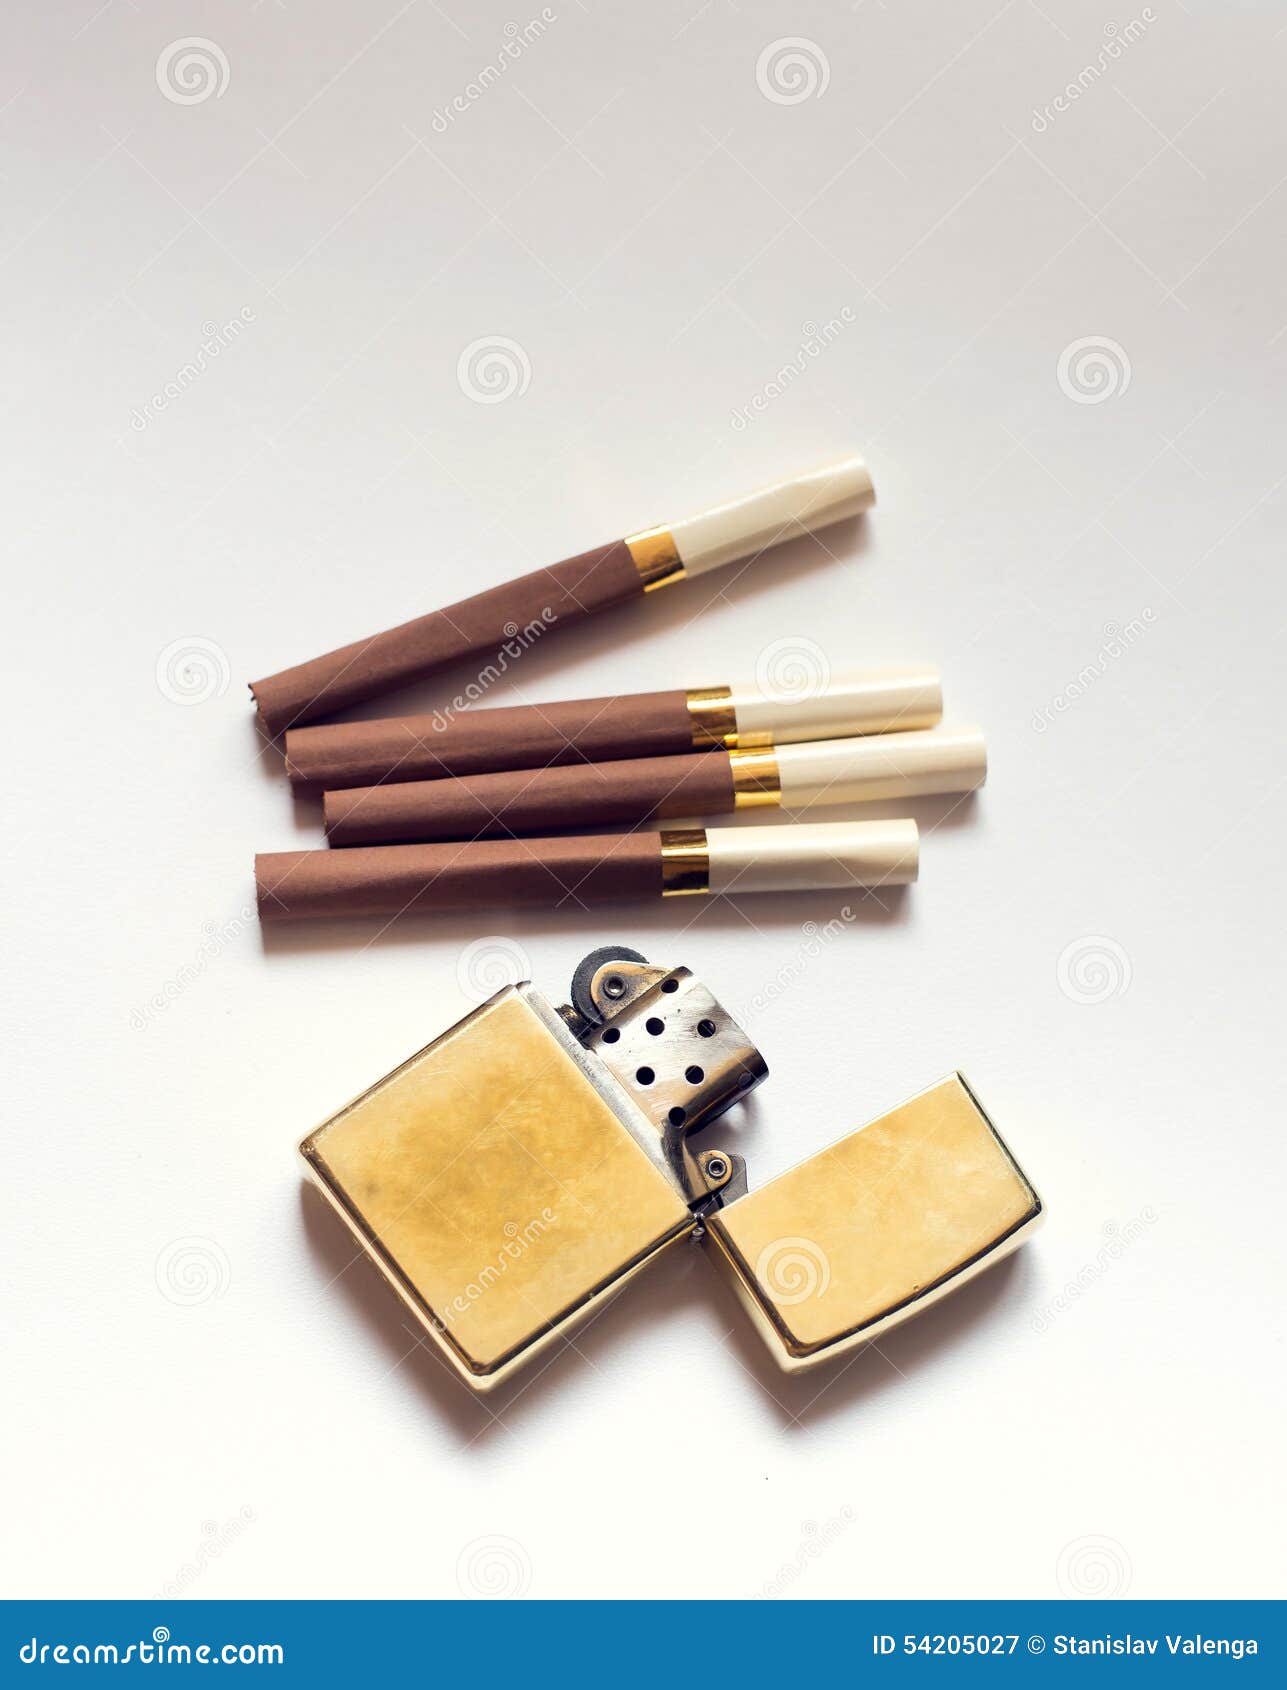 Zigarette Mit Goldenem Feuerzeug Auf Weißem Hintergrund Stockbild - Bild  von krankheit, filter: 54205027